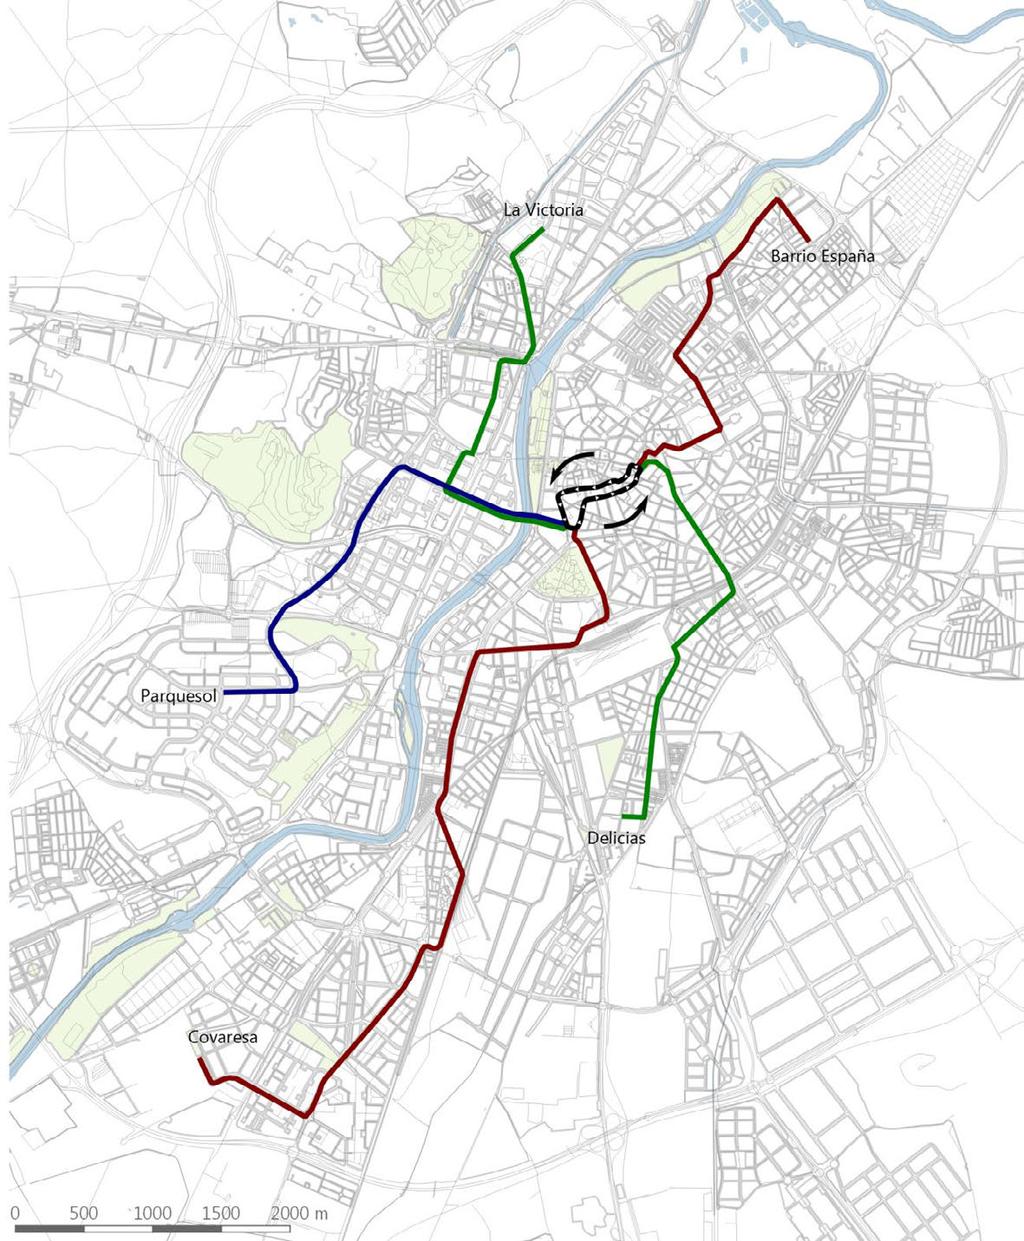 El "Estudio previo para la implantación de un sistema de transporte en Valladolid" fue encargado por el Ayuntamiento en 1997 y